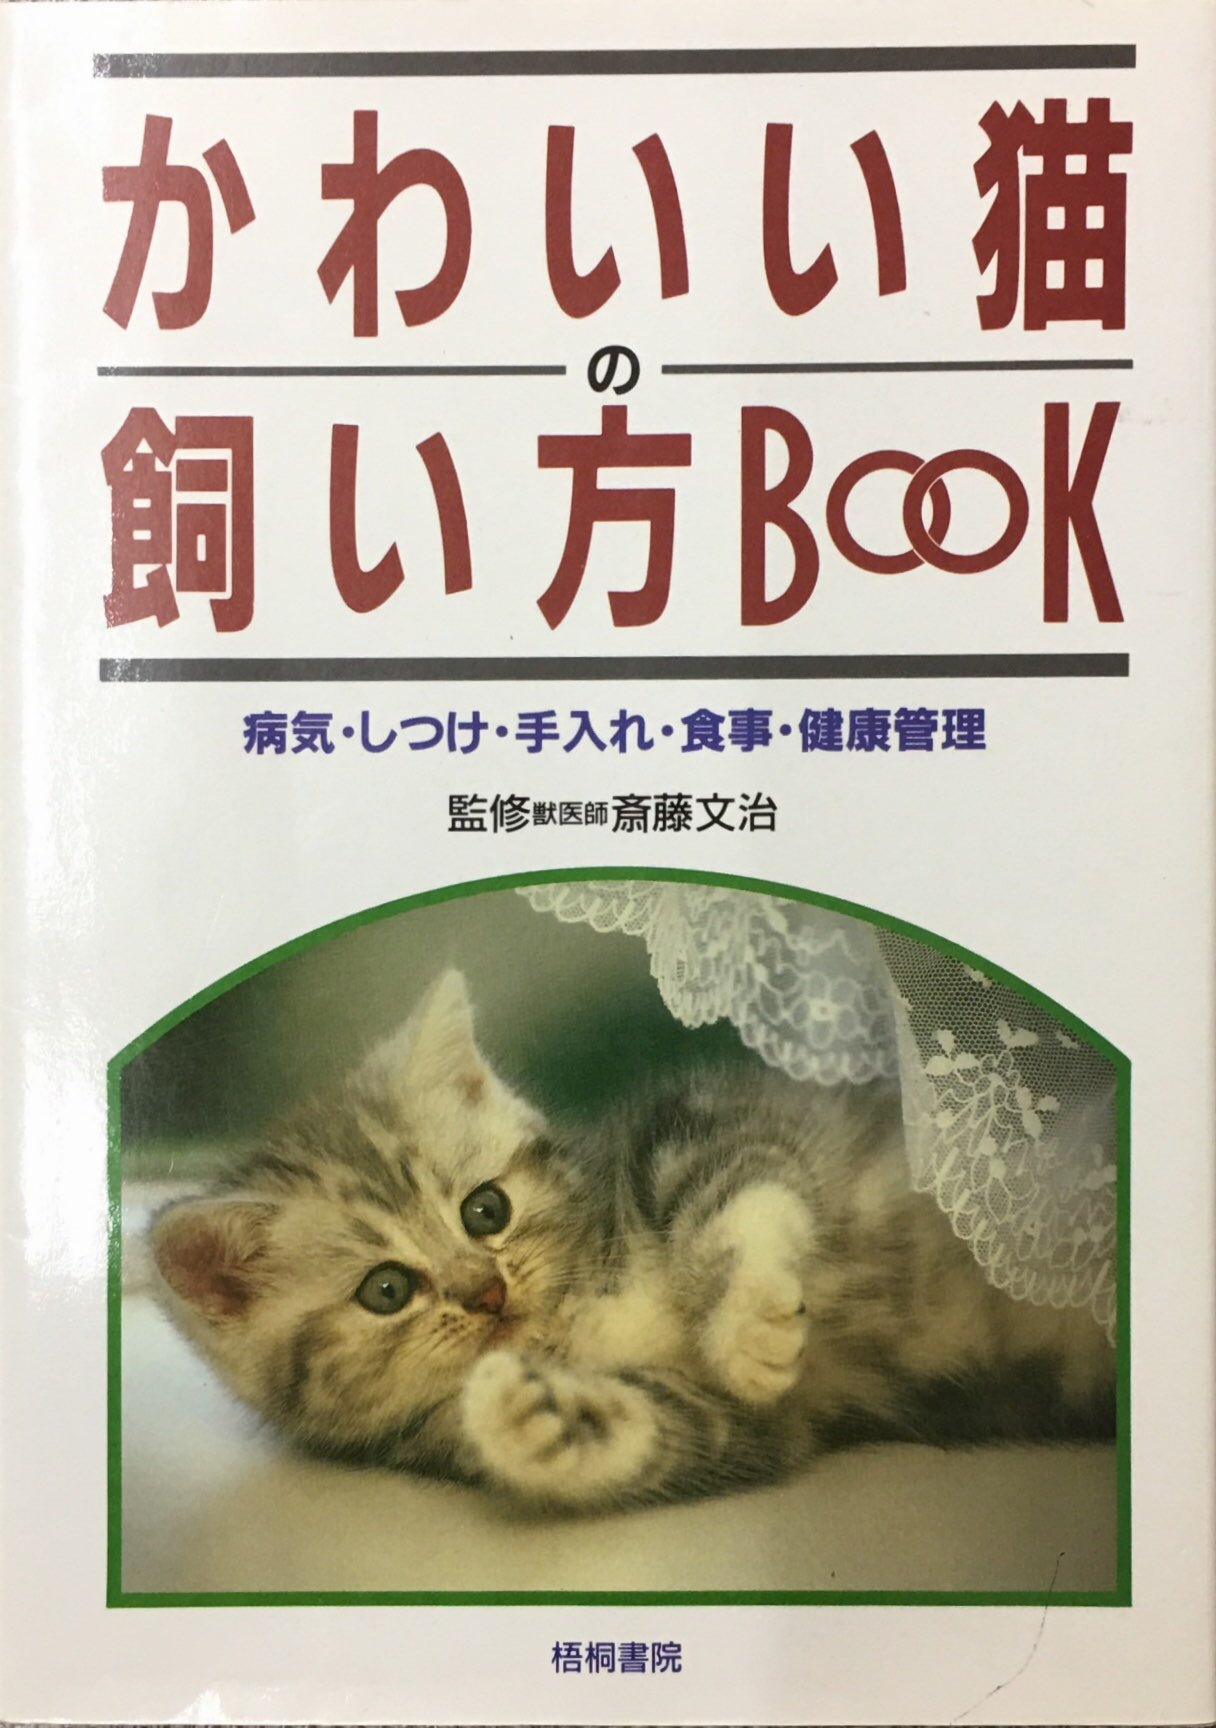 かわいい猫の飼い方book 単行本 猫本サロン 京都三条サクラヤ